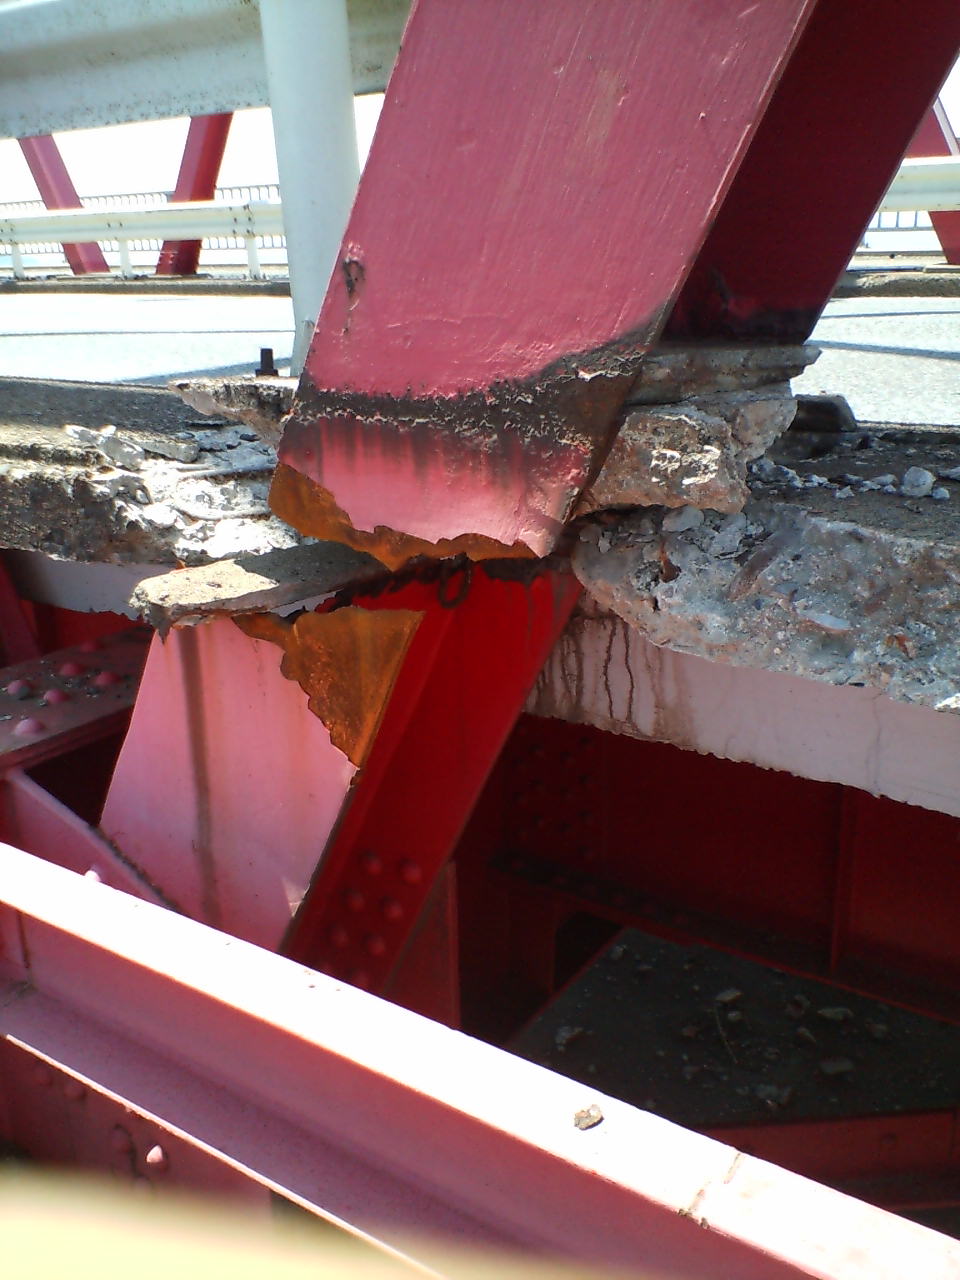 木曽川大橋で速度規制 鋼材破断で 三重県ニュース Mie News